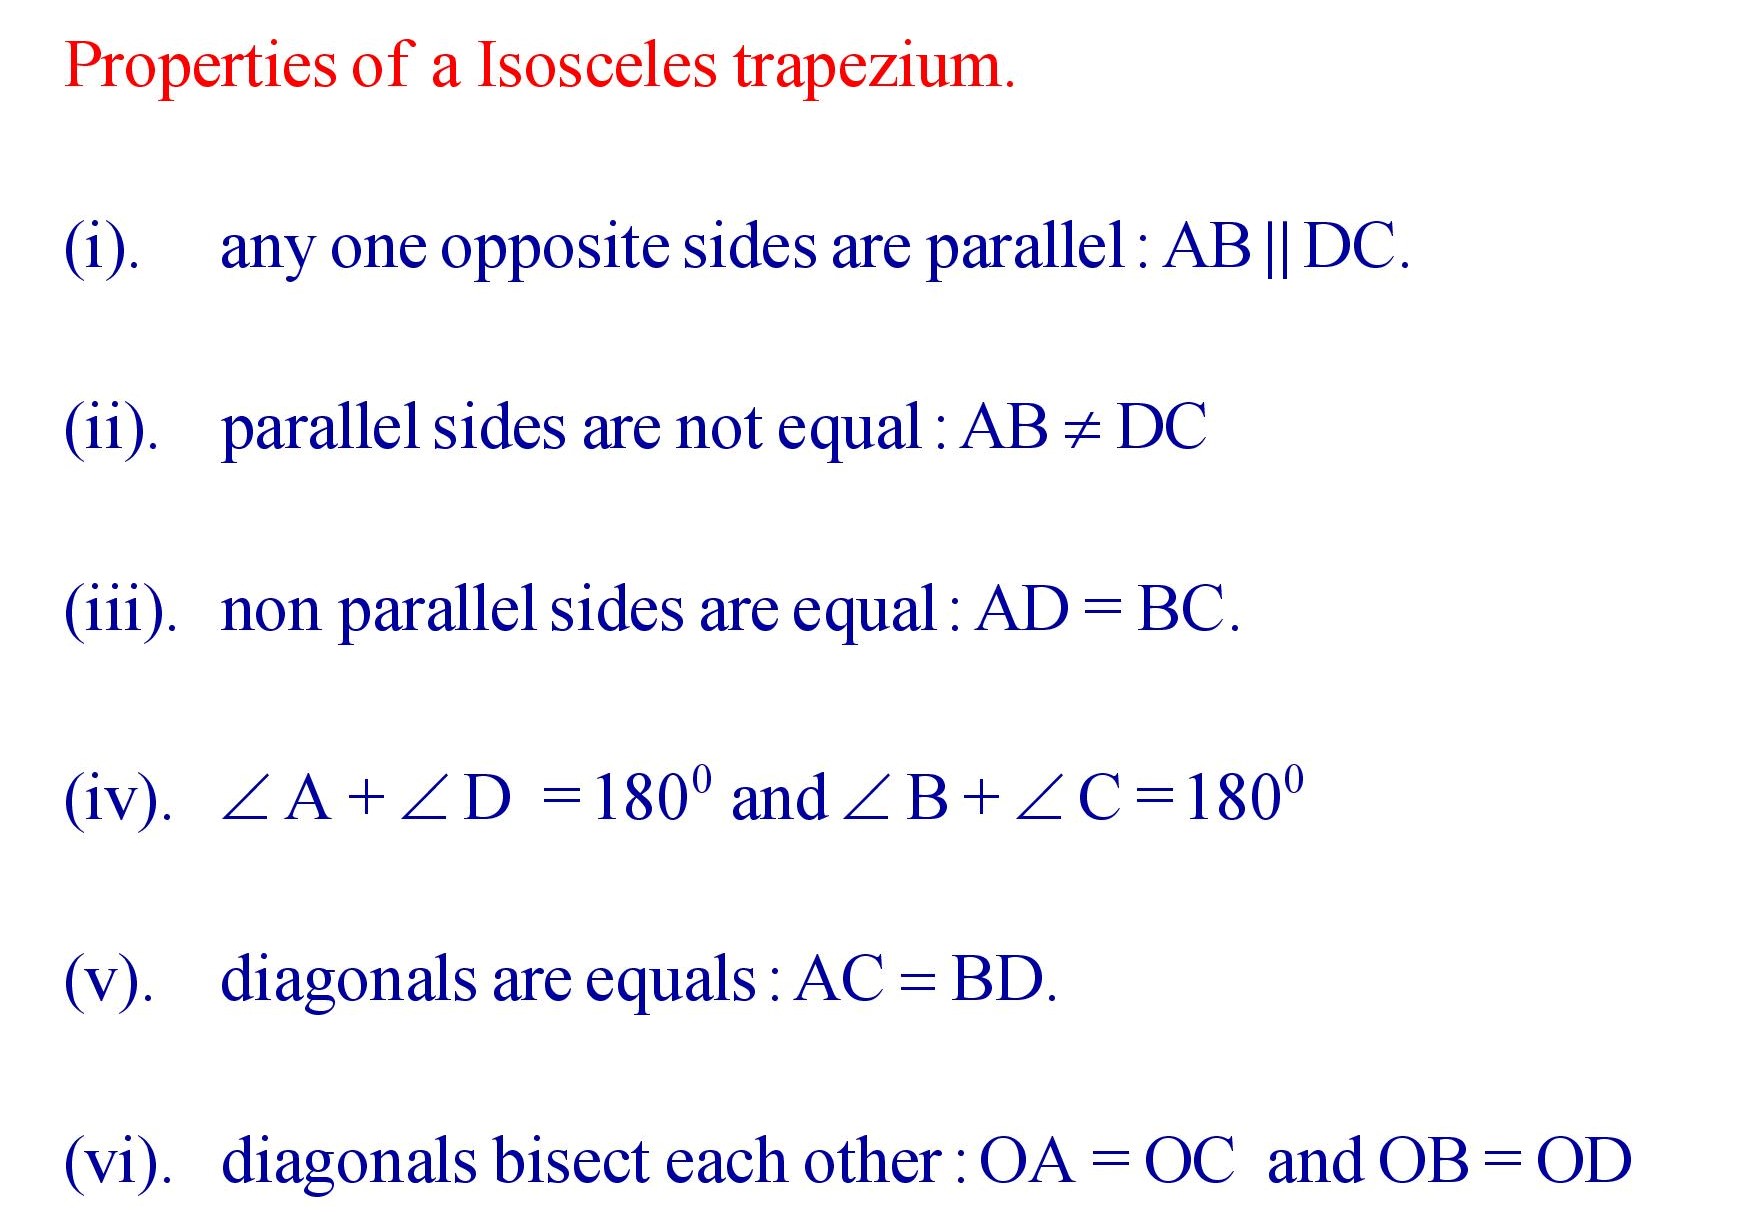 Properties of a Isosceles Trapezium